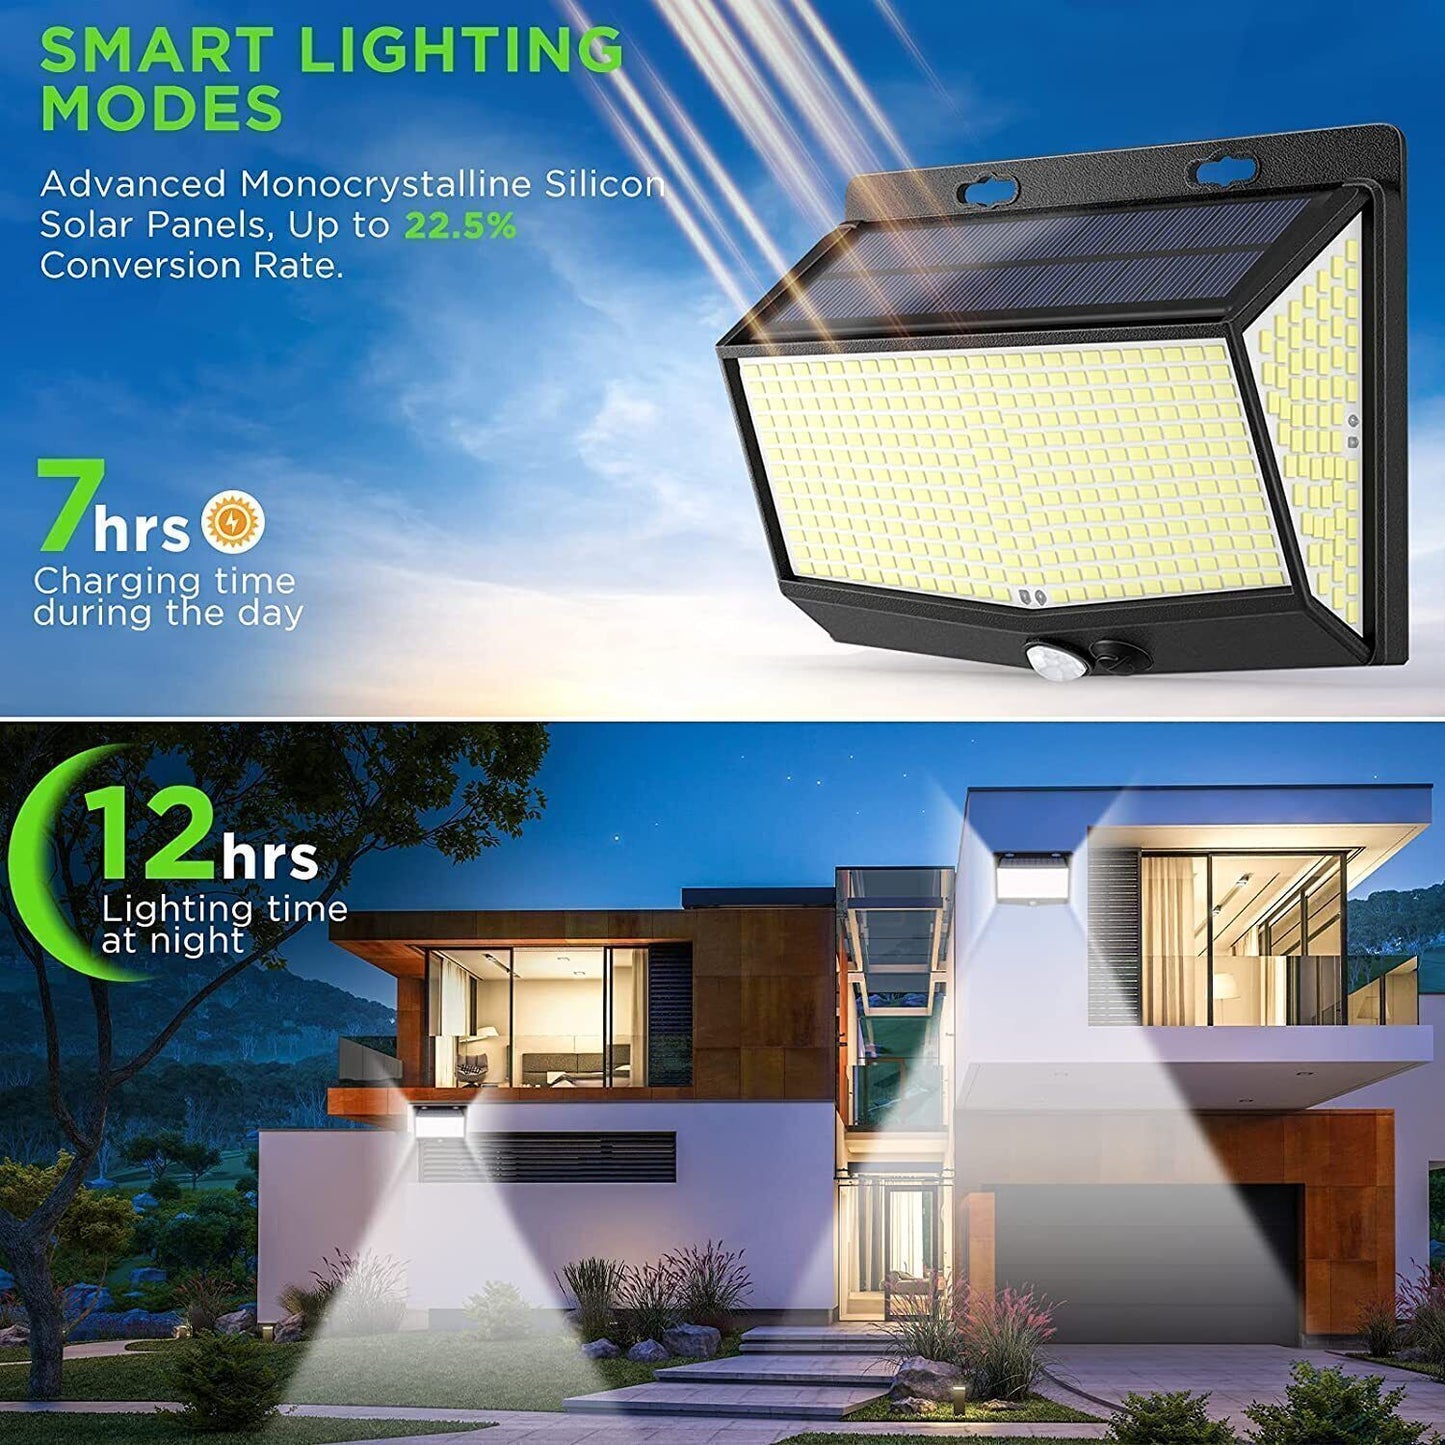 Solar Power Straßenlaterne Outdoor Solar Sensor Lichter für Garten Dekor 432 Led Reflektor Beleuchtung Wasserdichte energia Solar Laterne